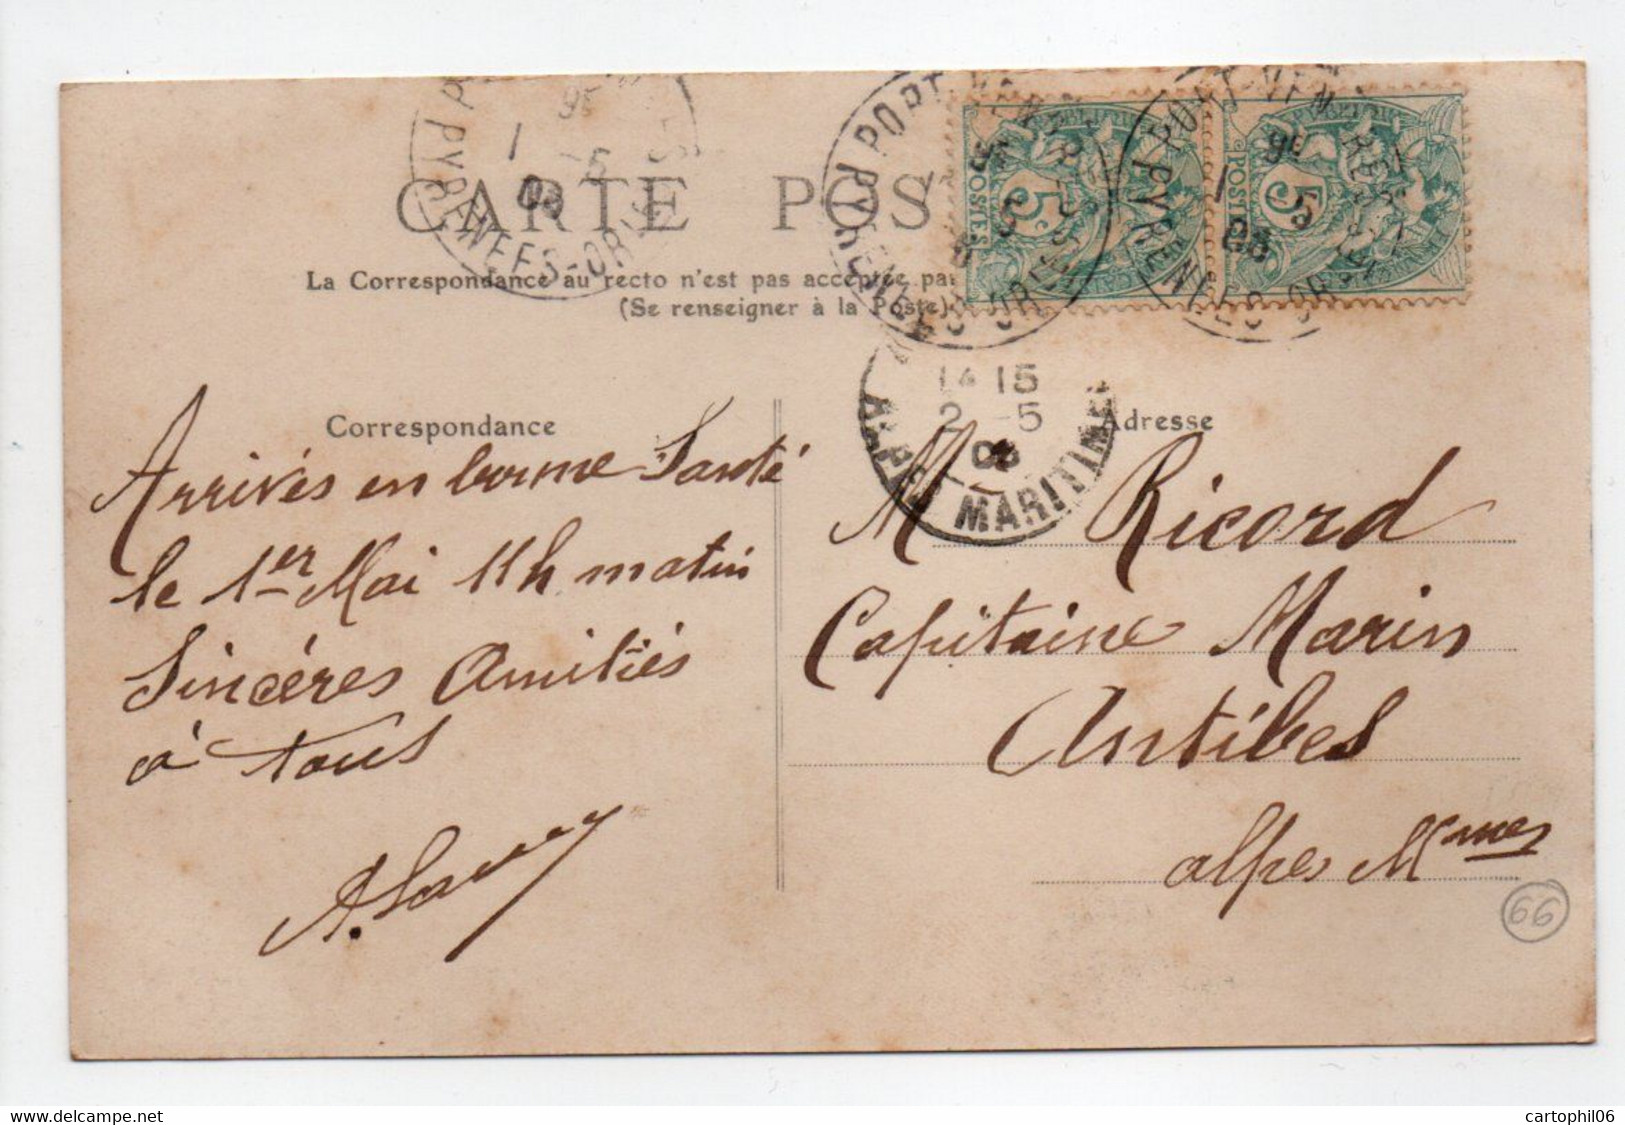 - CPA PORT-VENDRES (66) - Vue Générale Du Port 1905 - - Port Vendres